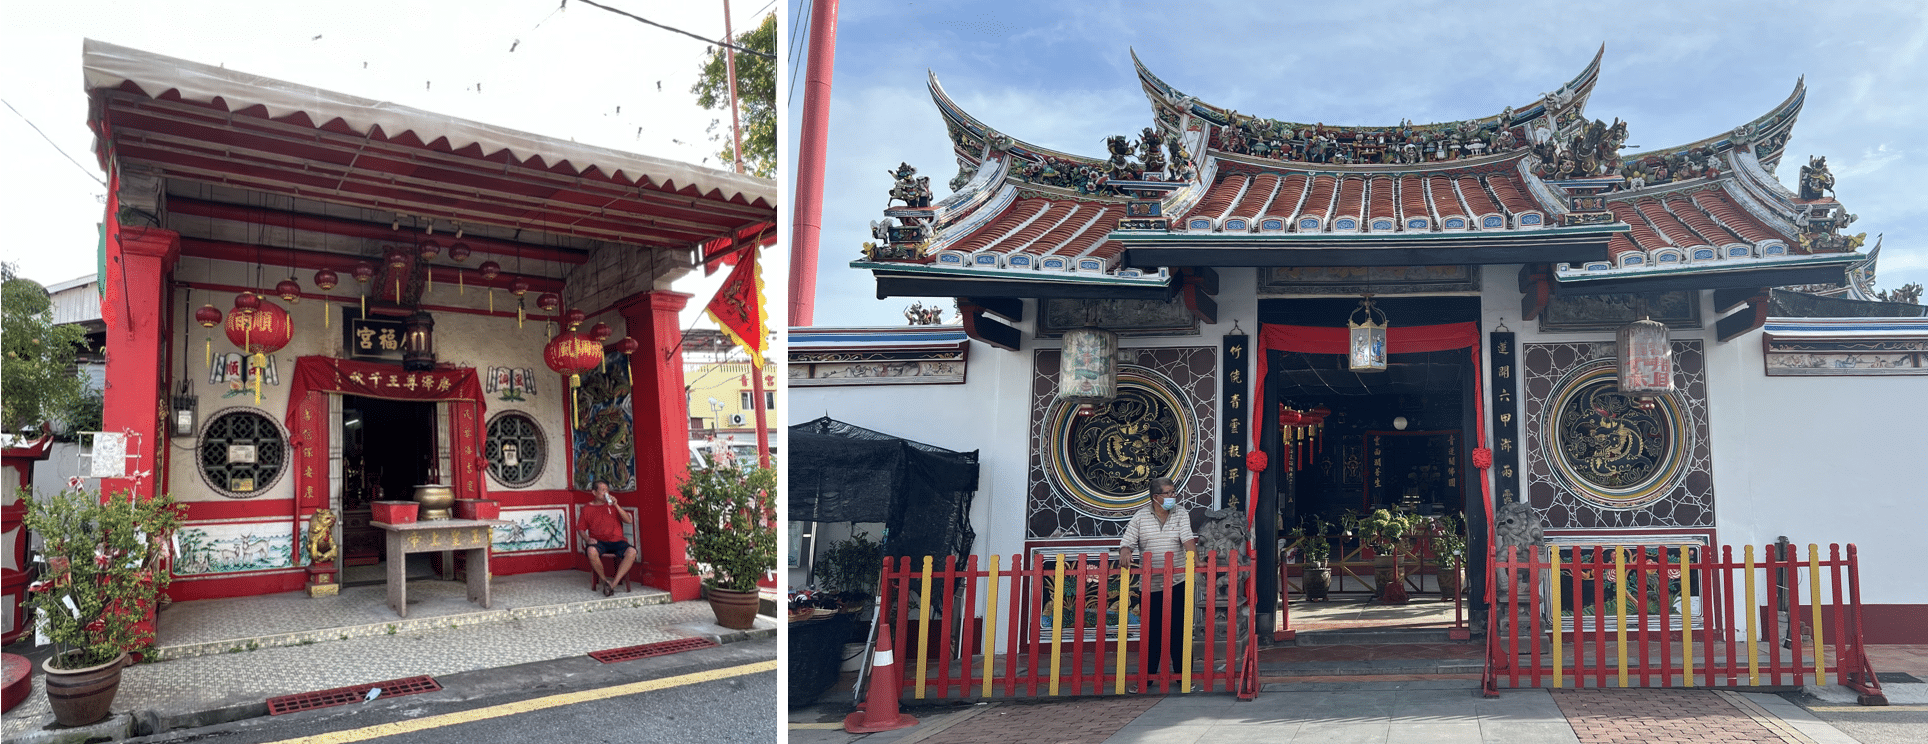 photos de temples chinois a malacca en malaisie